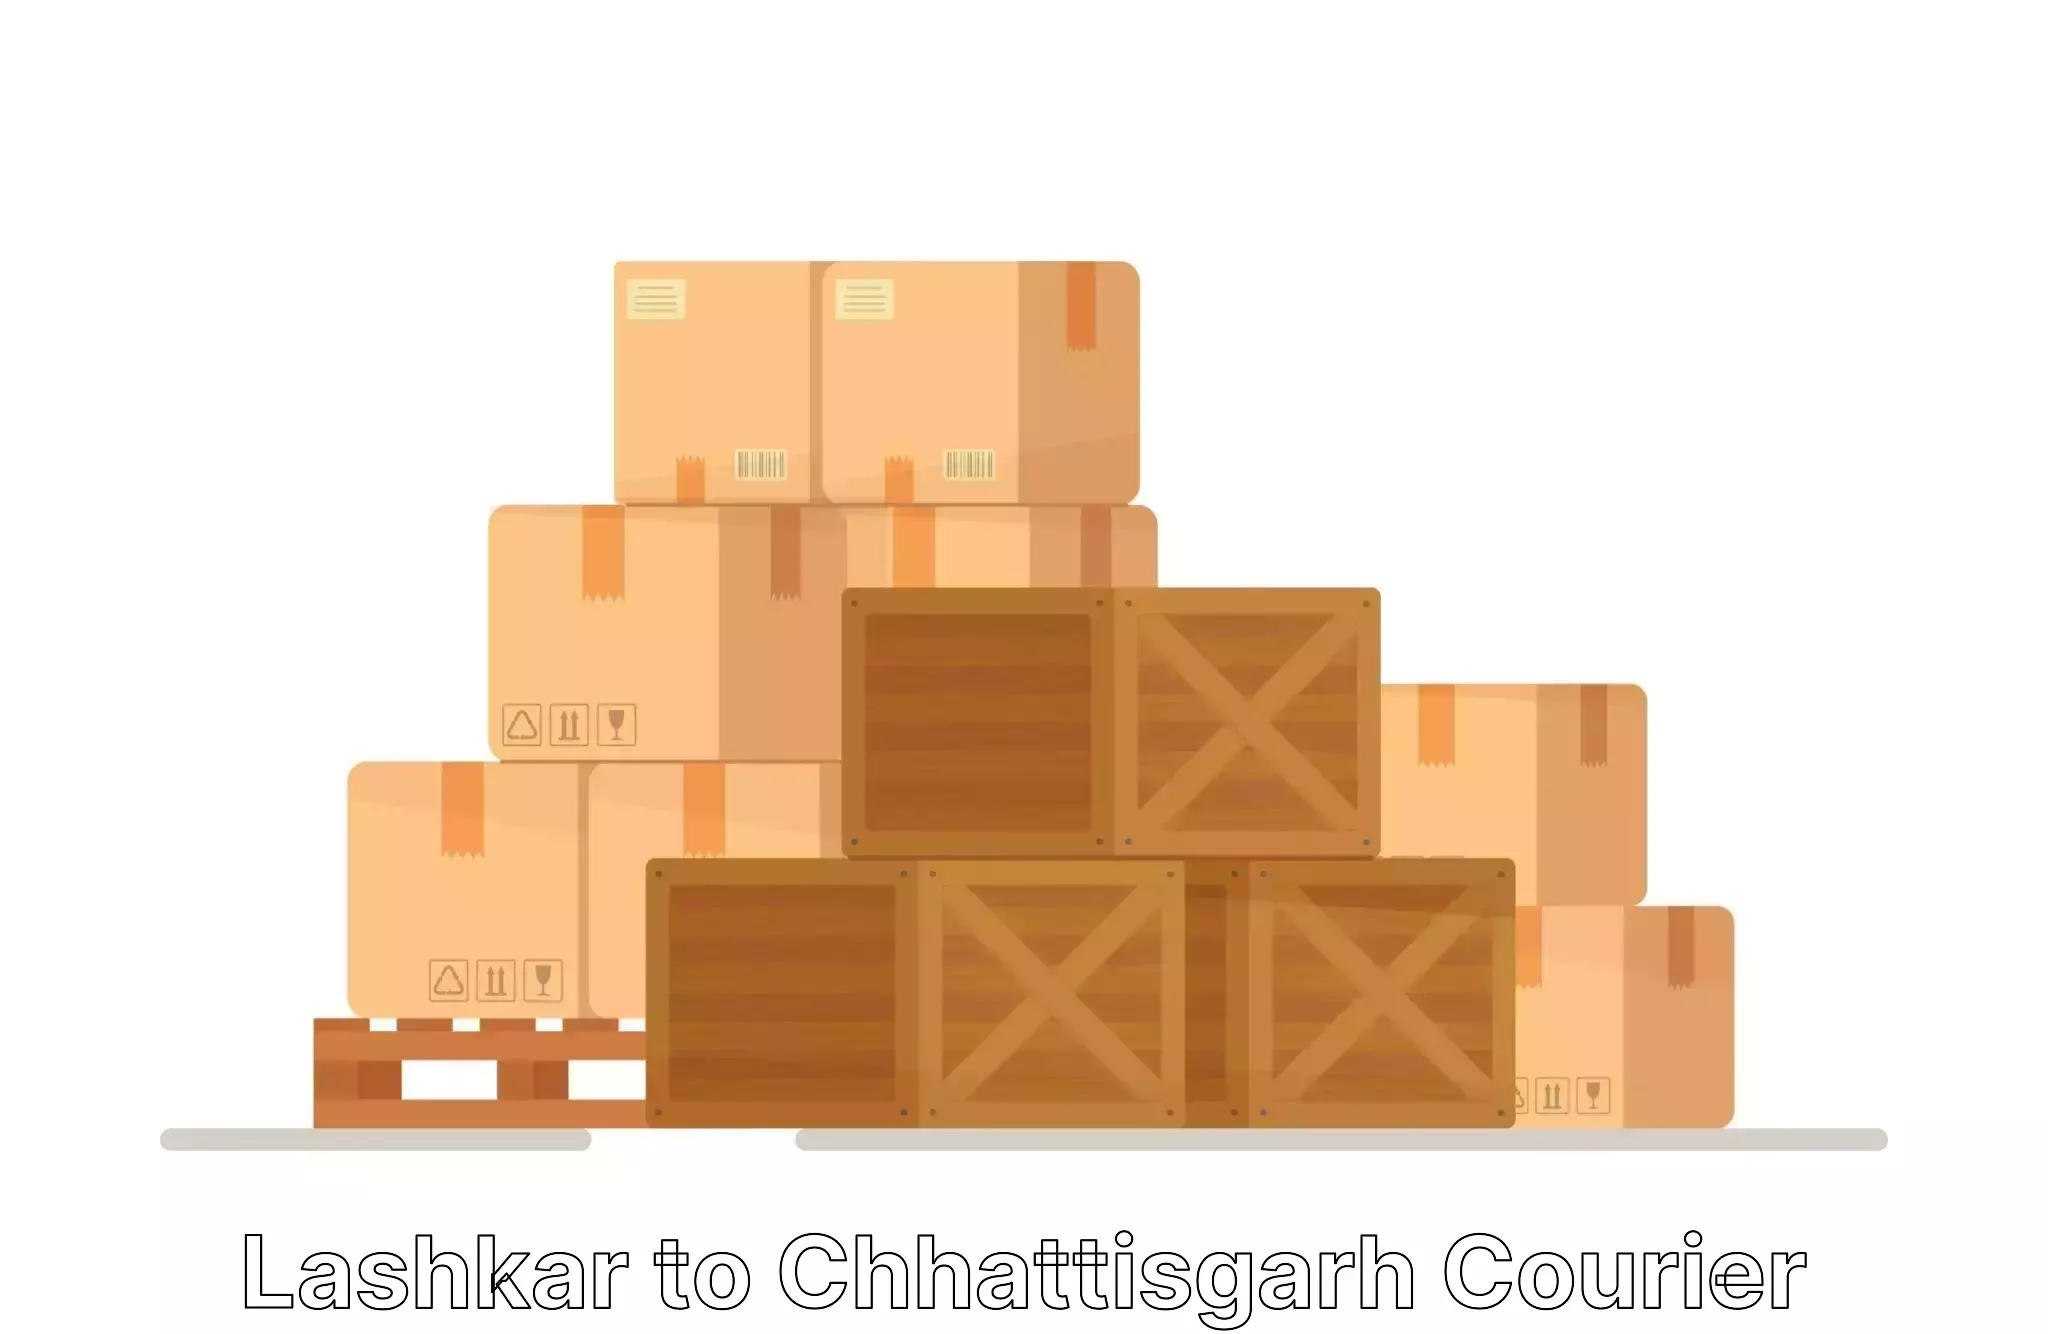 Personalized relocation solutions Lashkar to Chhattisgarh